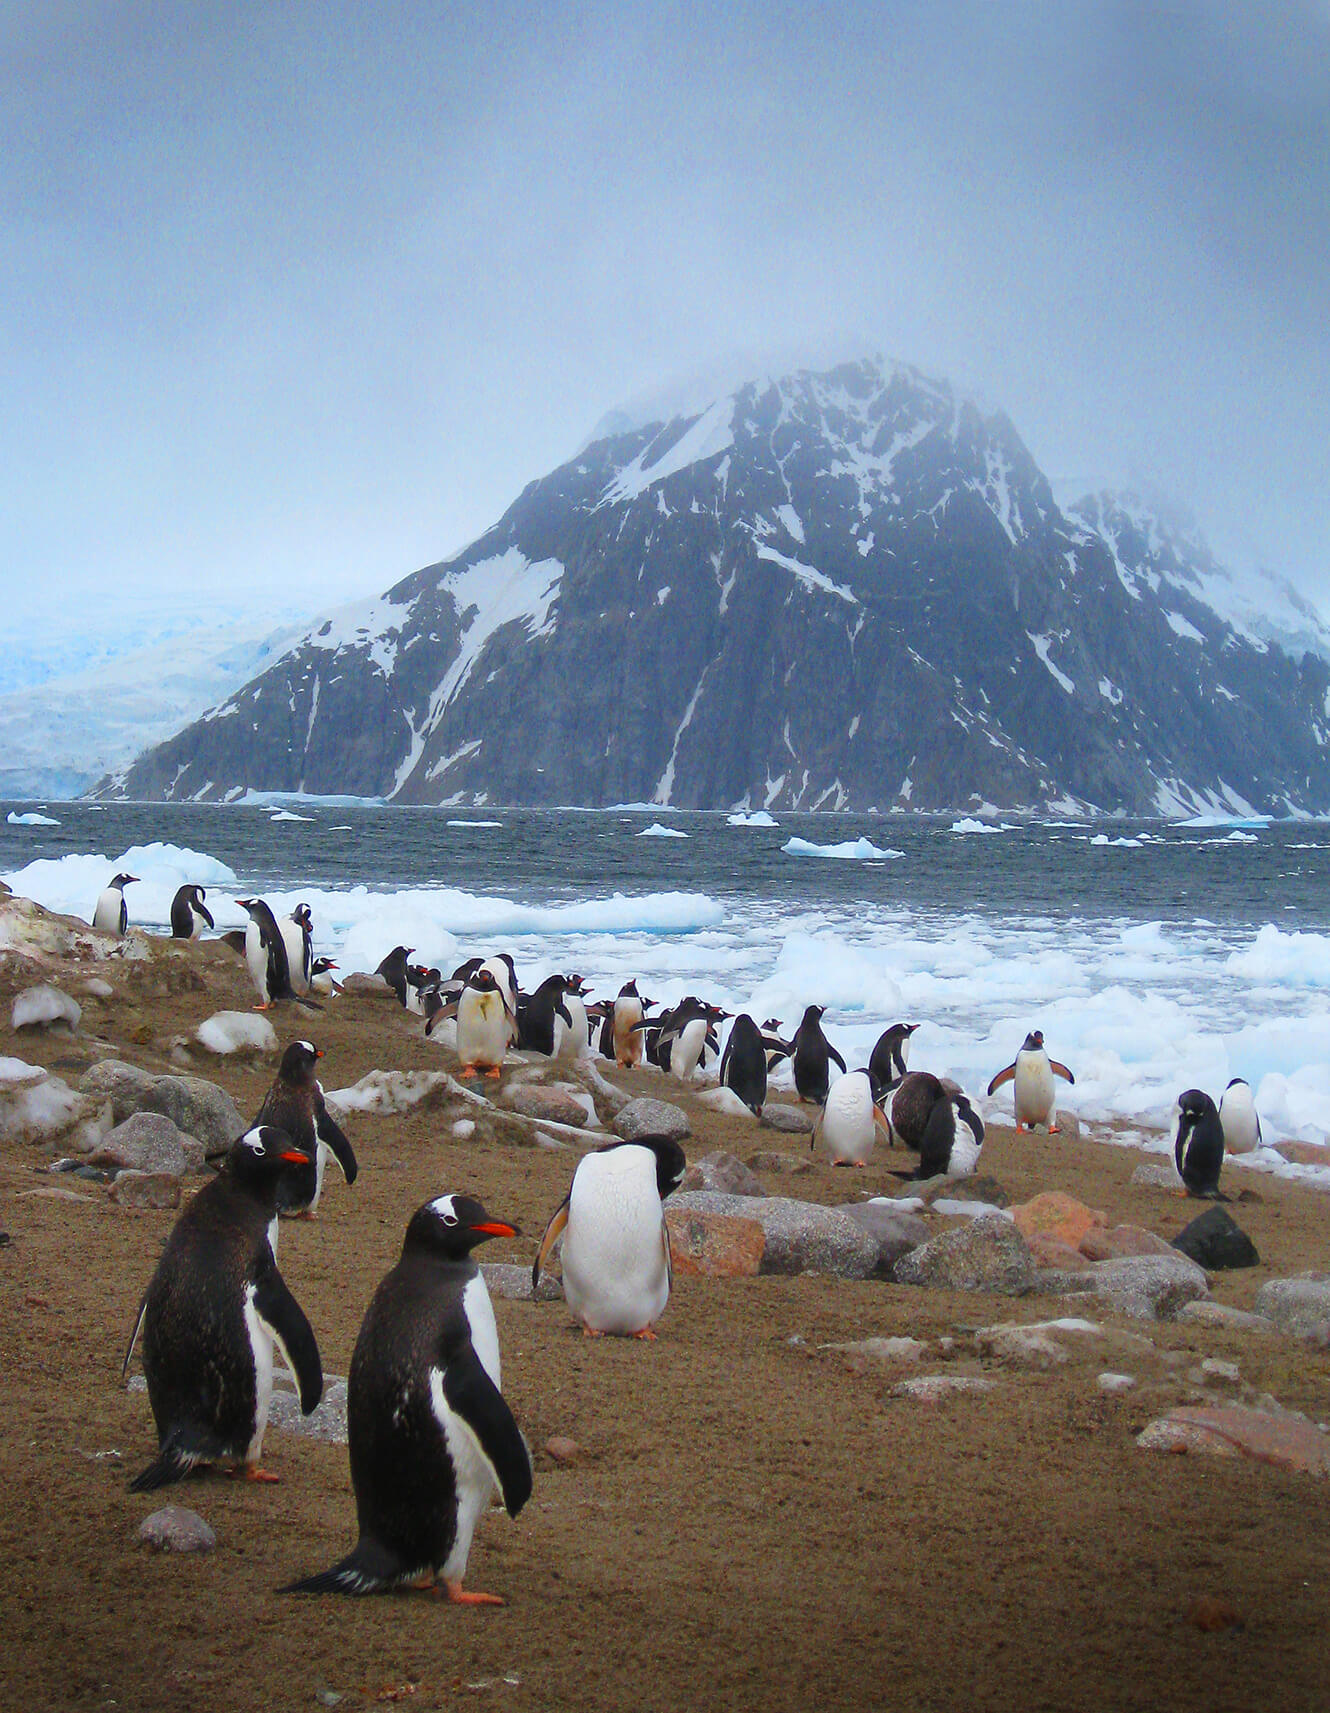 gentoo penguins hire photo art director for Antarctica